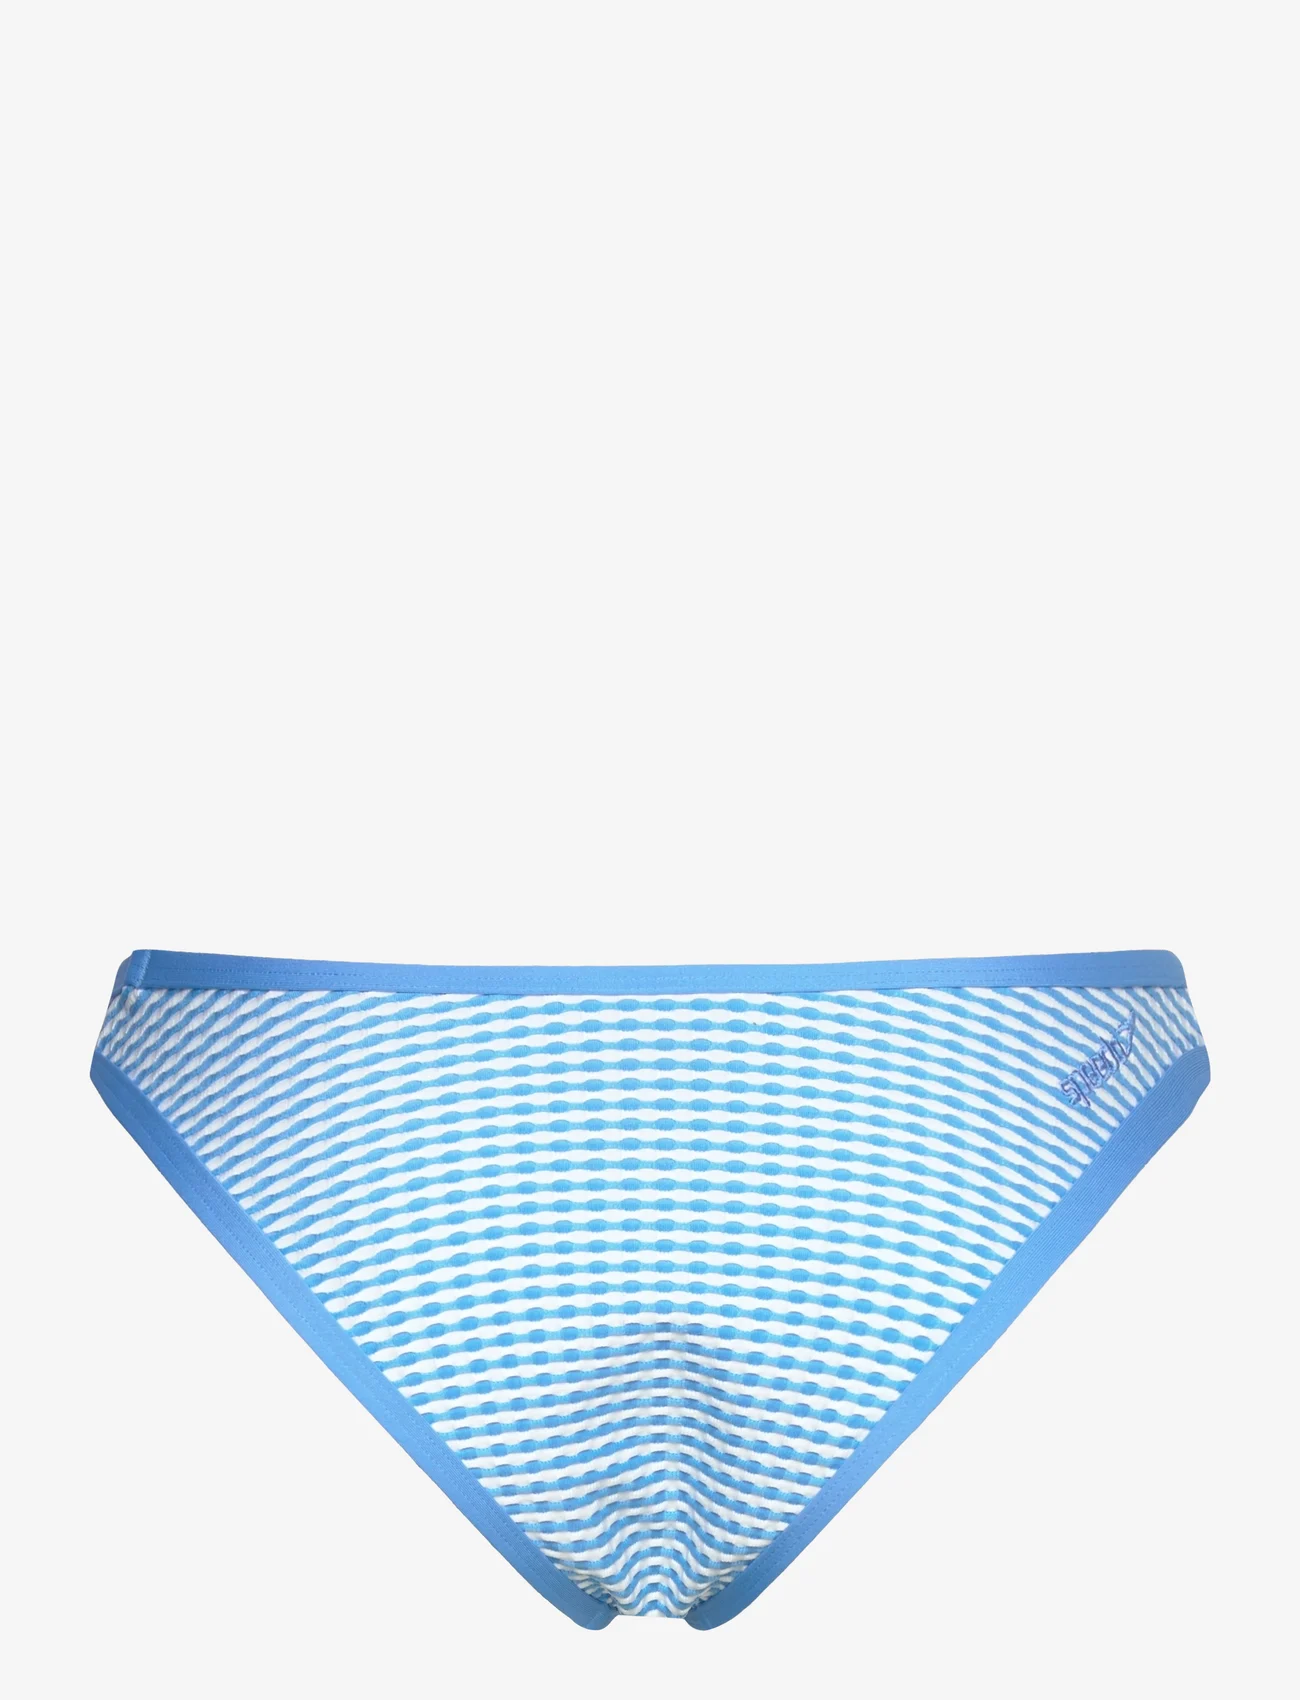 Speedo - GINGHAM SCOOP BOTTOM - bikinibriefs - blue - 1